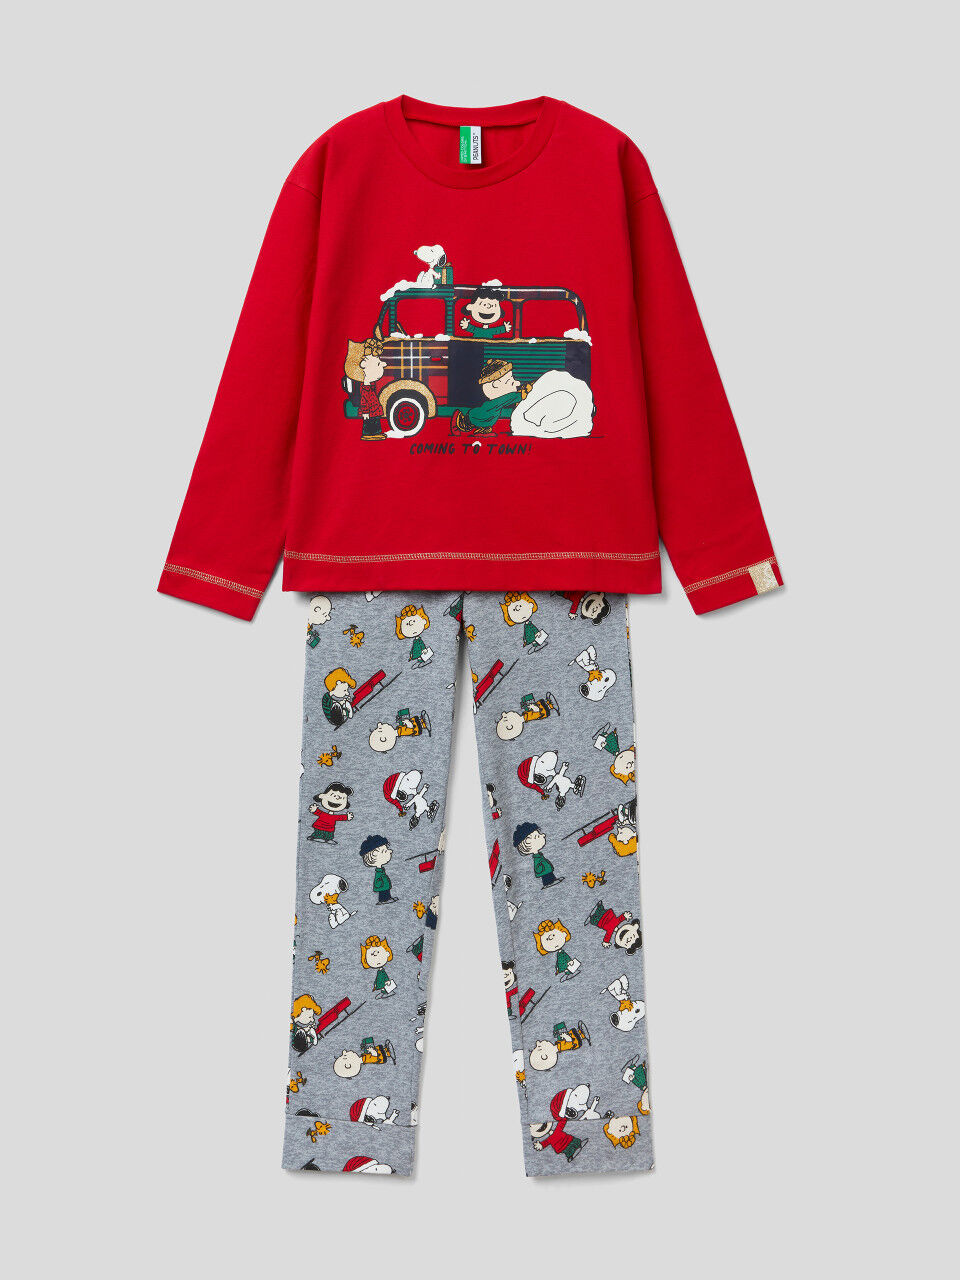 Snoopy Christmas pyjamas